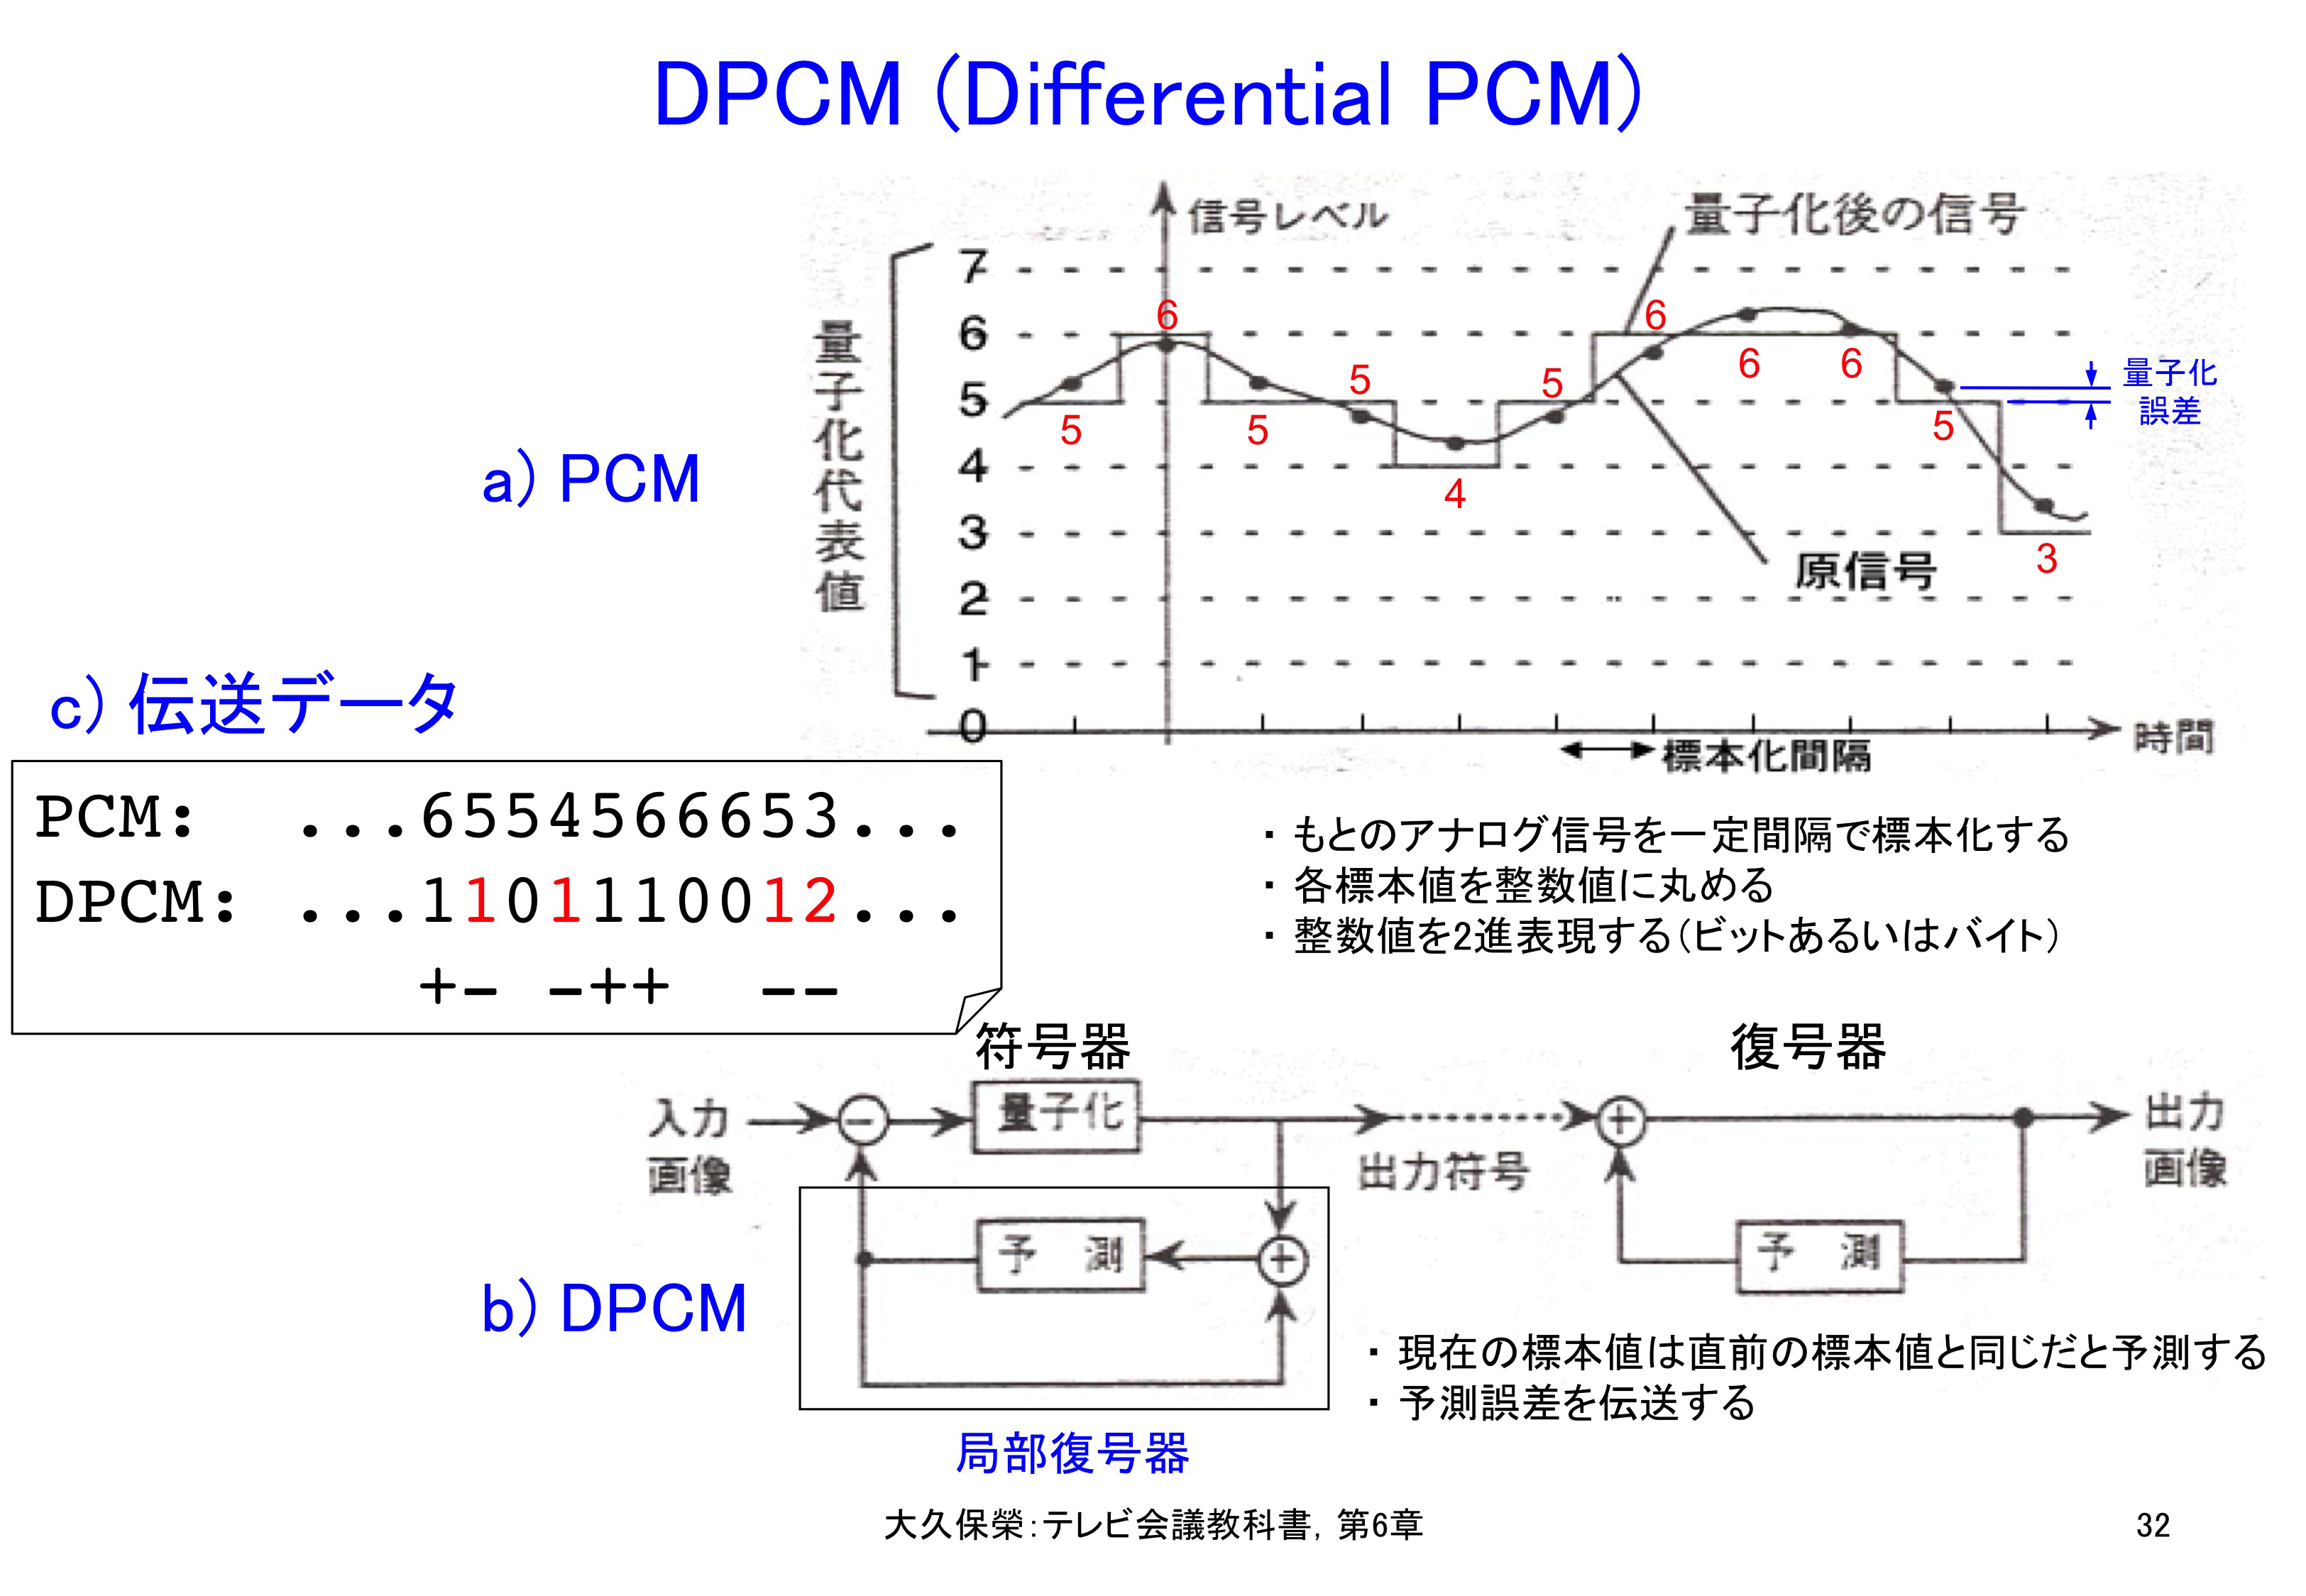 図6-32 DPCM (Differential PCM)